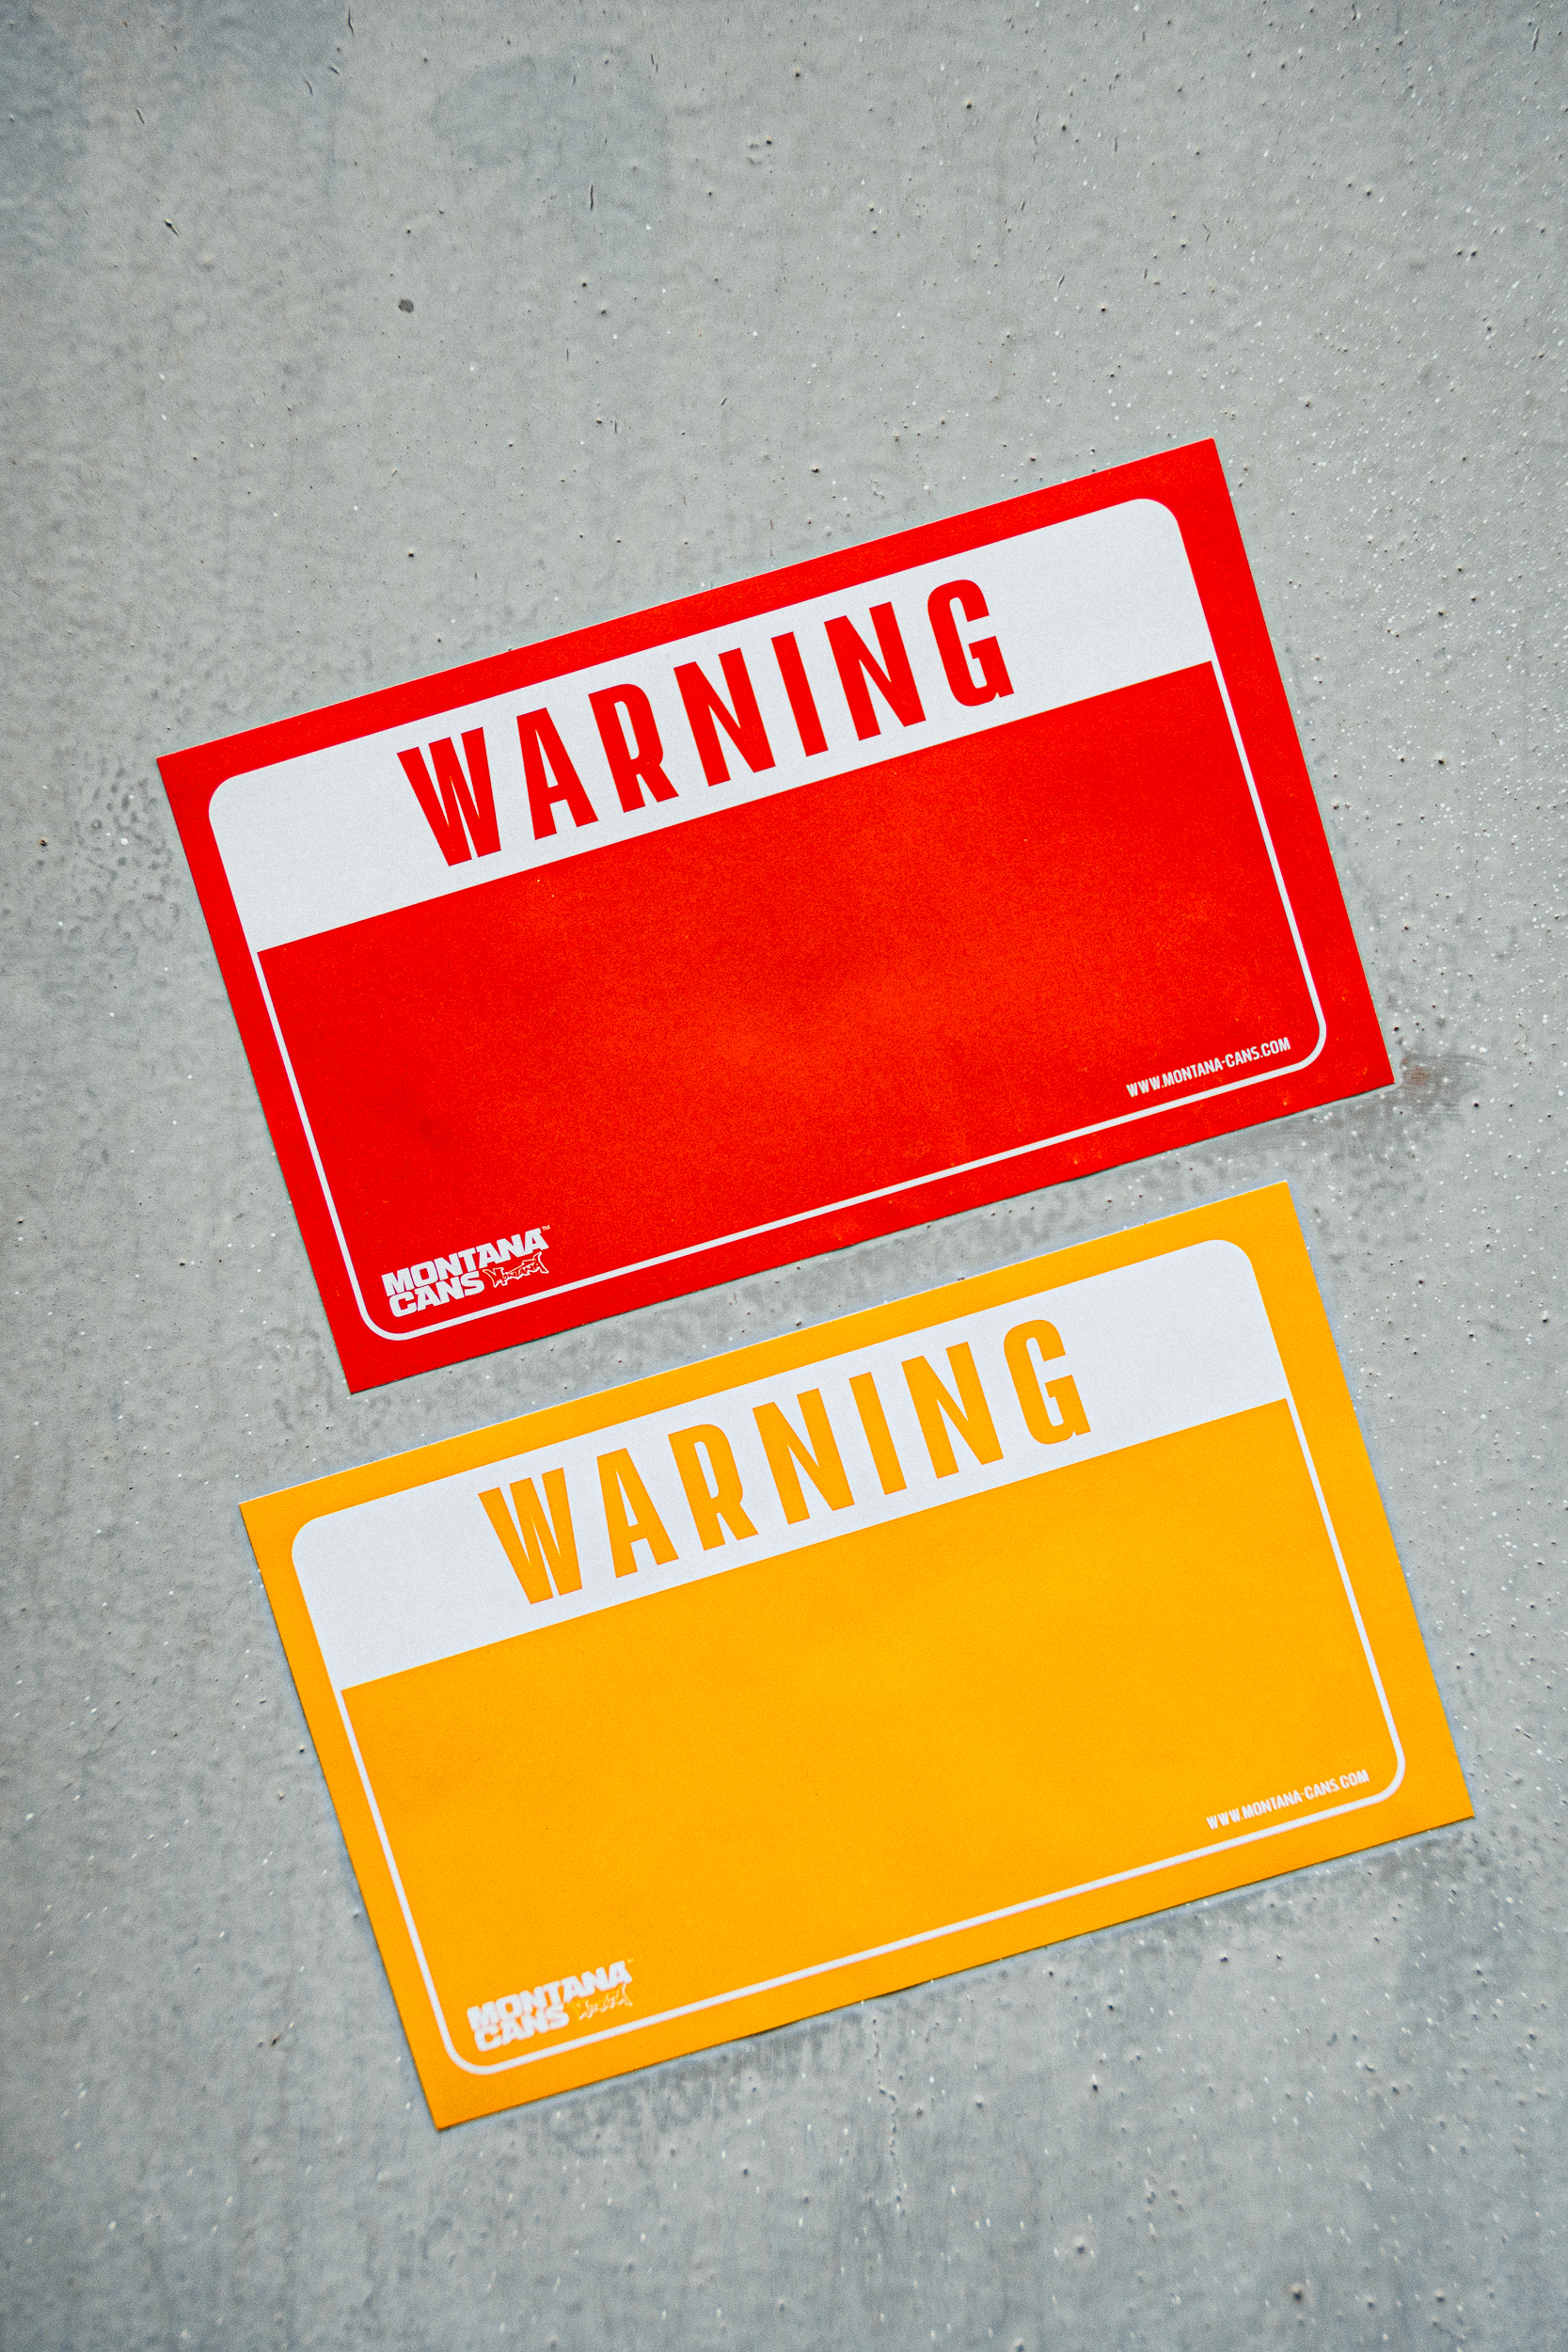 Montana Warning Sticker Pack - Red/Yellow